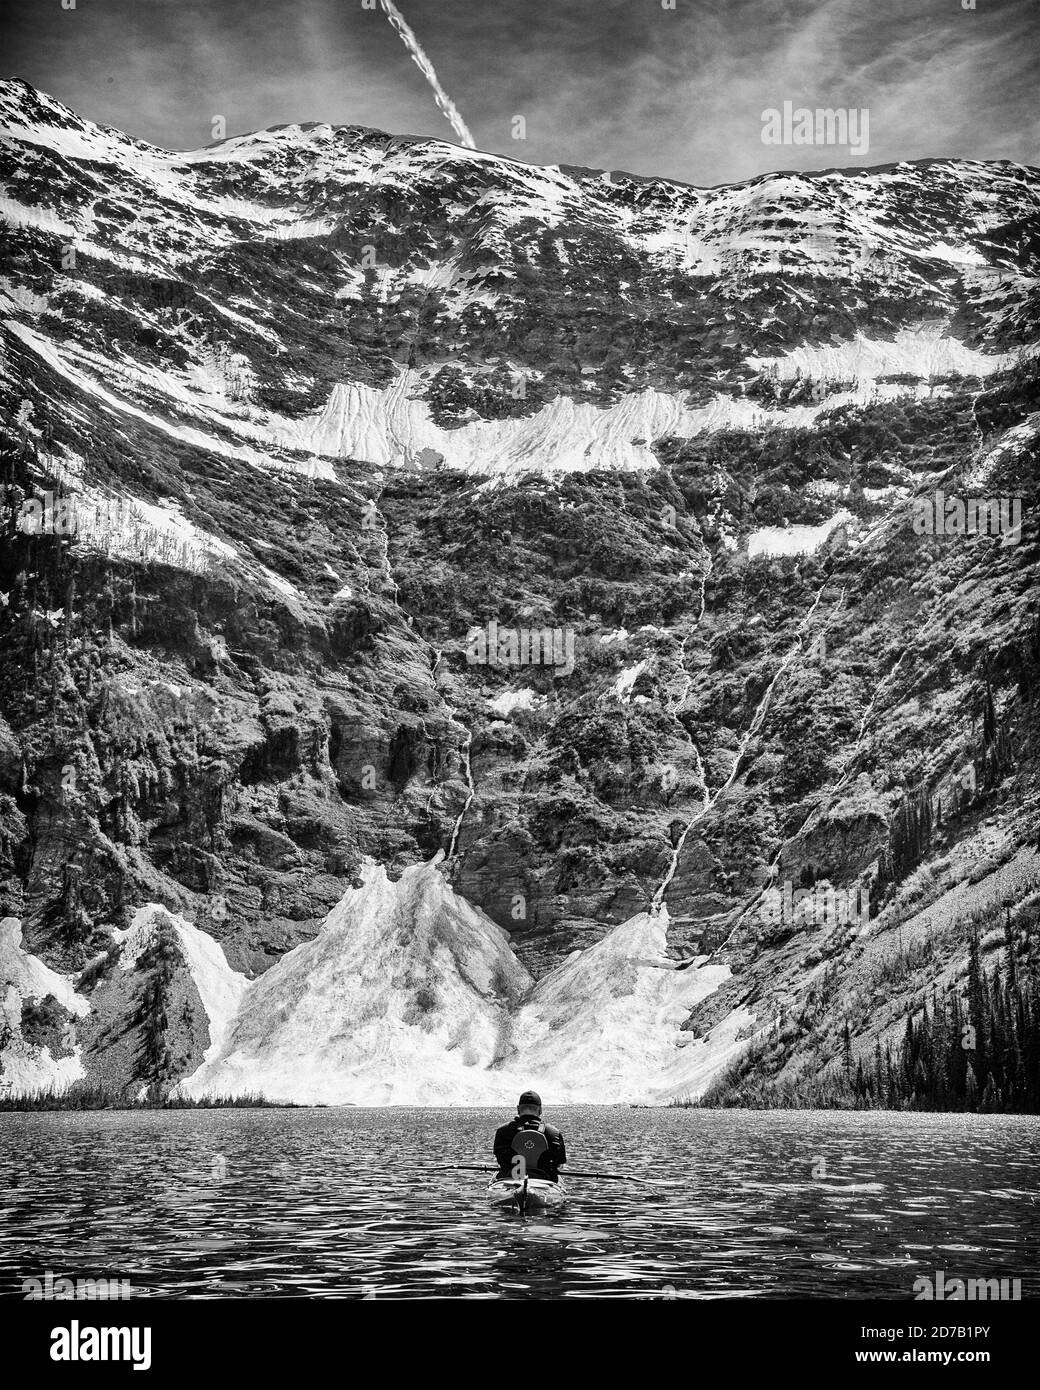 Rear View of Man Kayaking, White Boar Lake, British Columbia, Canada Stock Photo